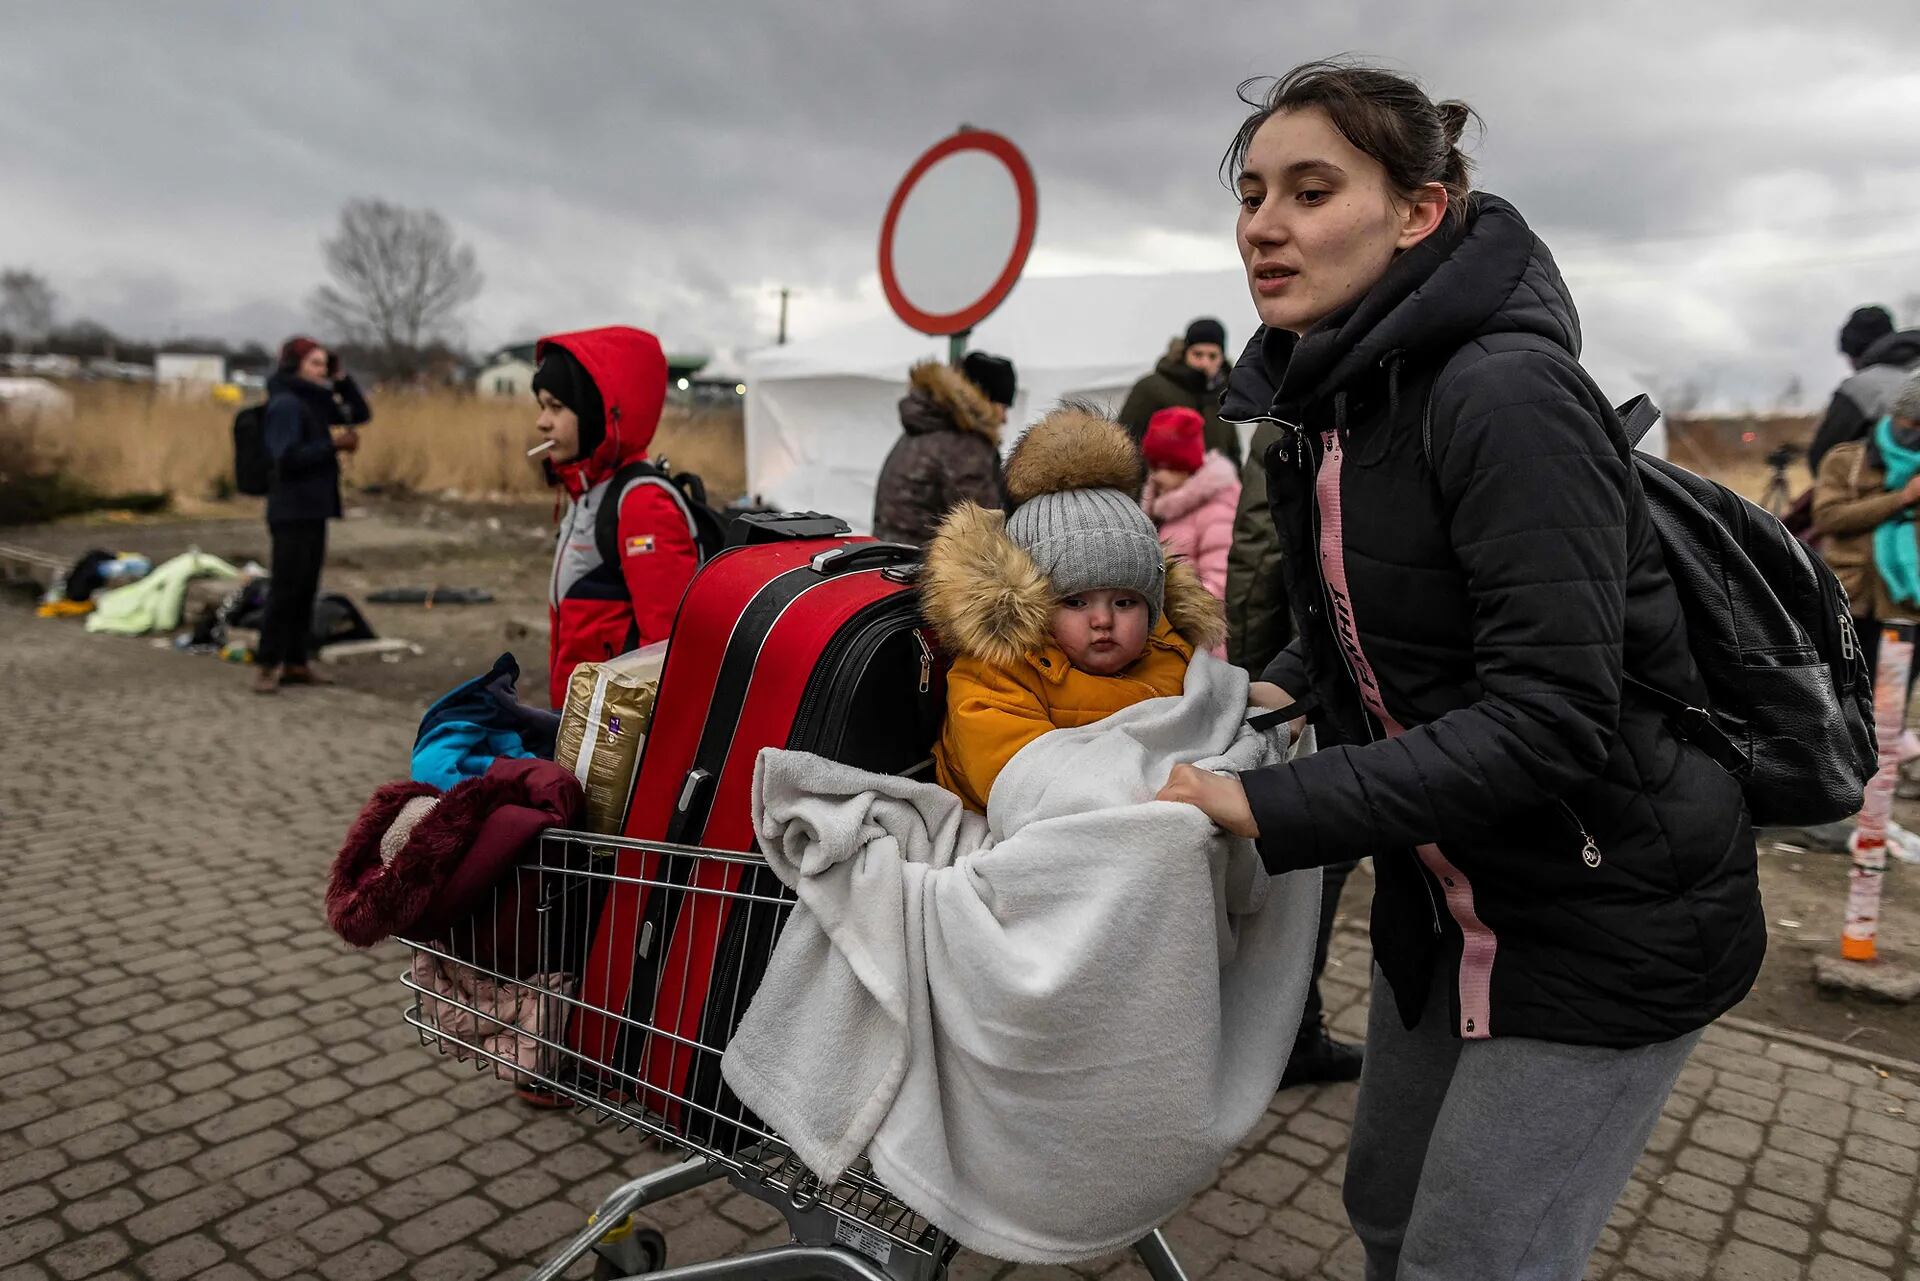 Una mujer llega a Polonia con su hijo y algunas de sus pertenencias en un carrito de supermercado